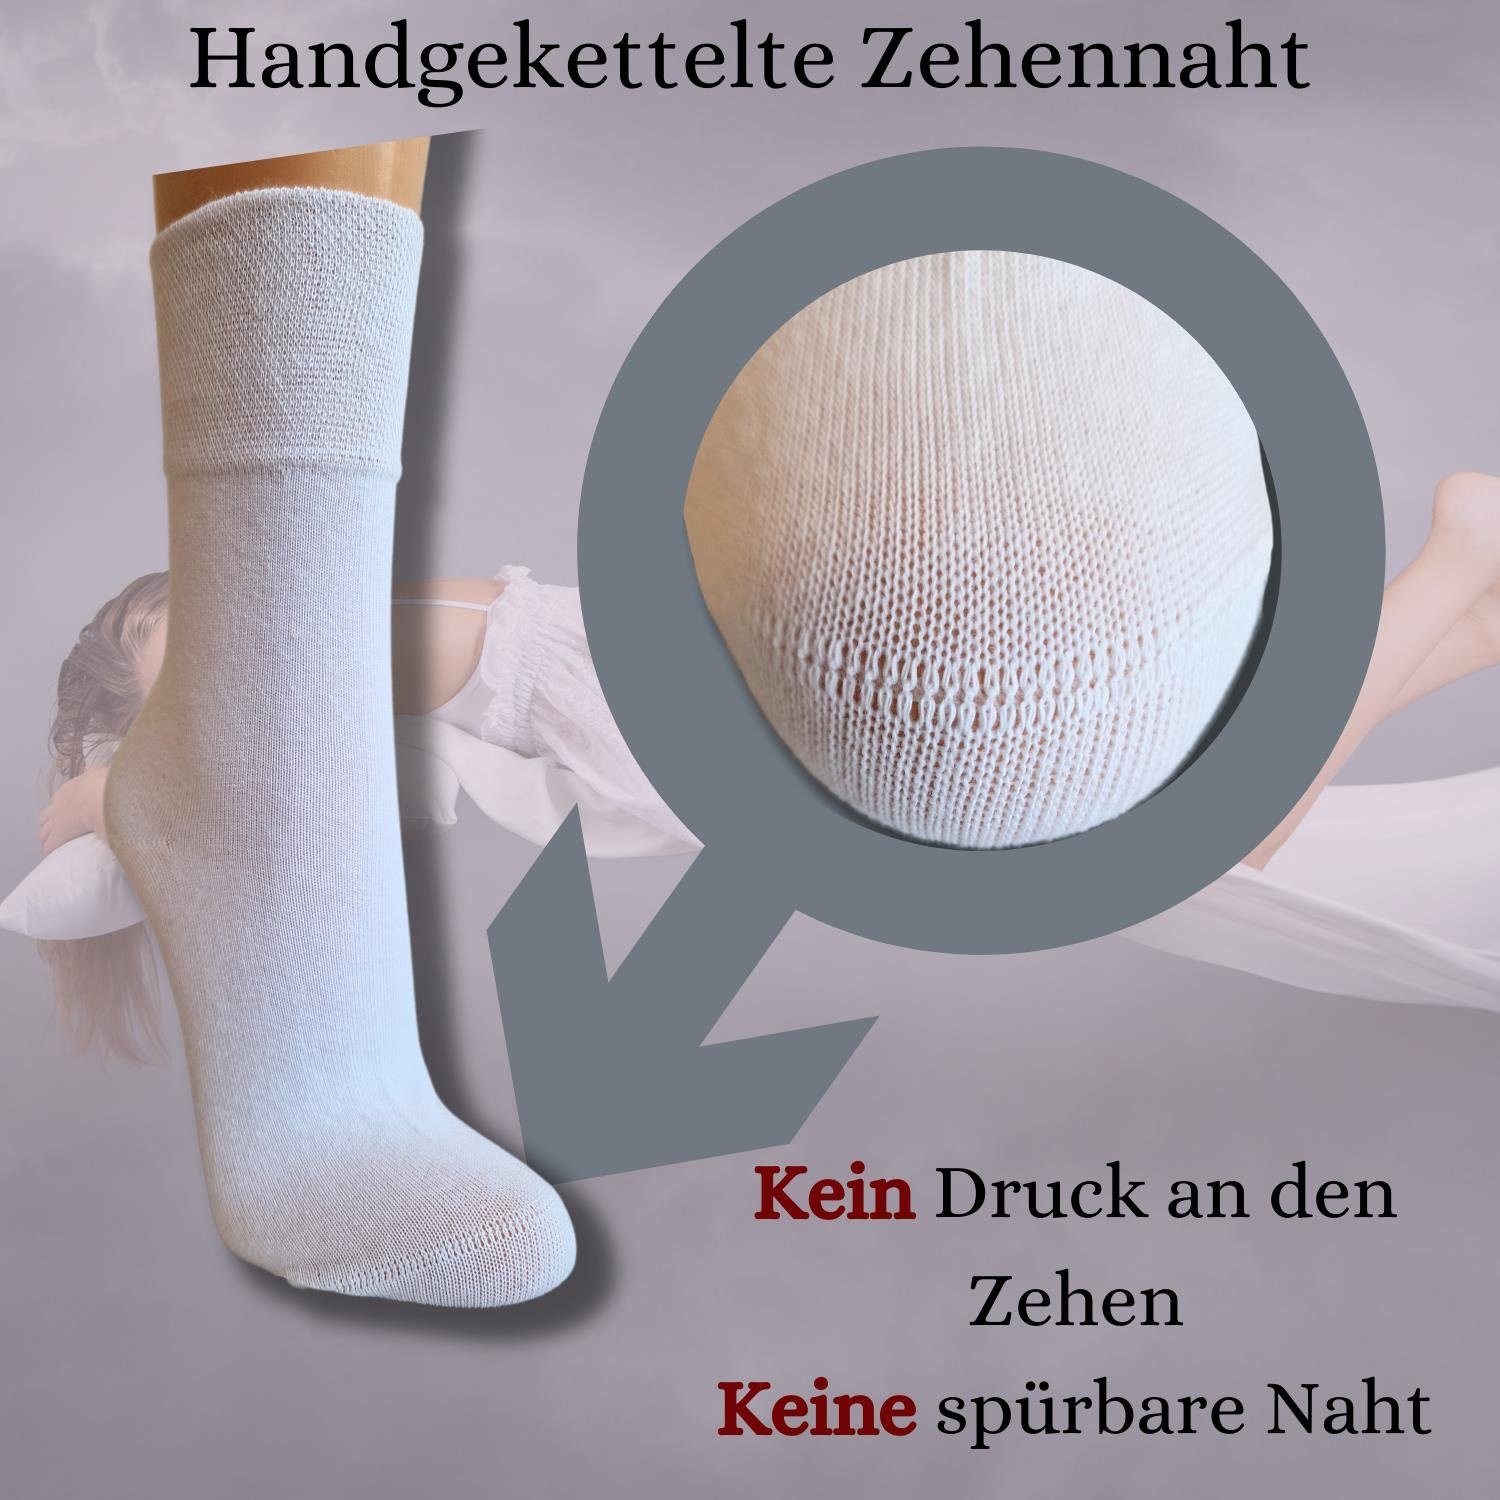 bentini Freizeitsocken Spruch Socken - anthrazit sleeping I´m (1-Paar)